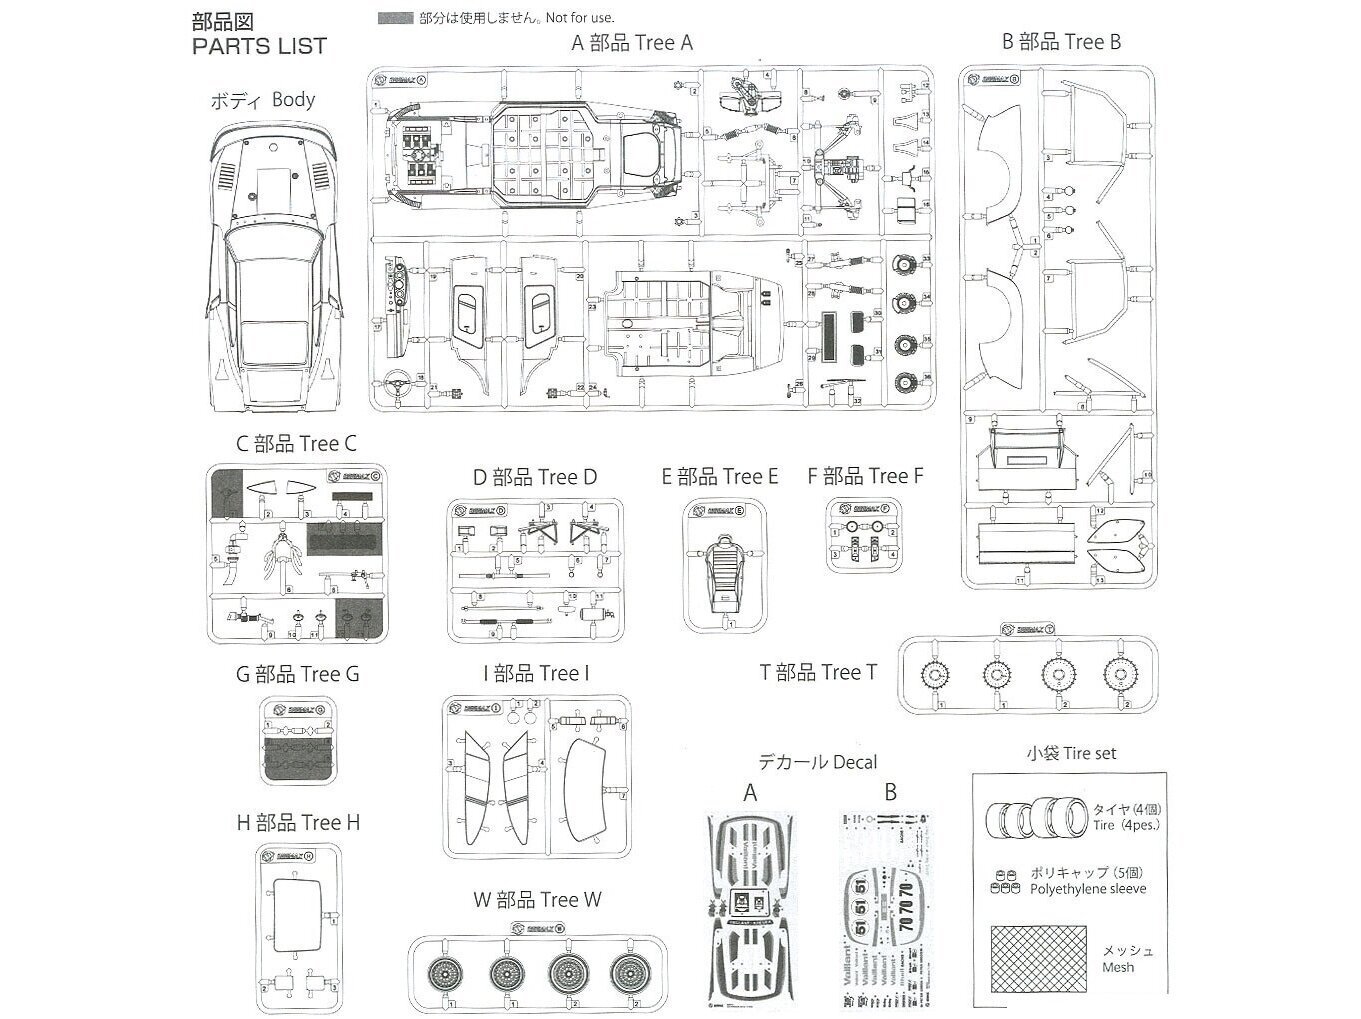 Konstruktorius Beemax - Porsche 935 K2 `77 DRM Ver., 1/24, 24015, 8 m.+ kaina ir informacija | Konstruktoriai ir kaladėlės | pigu.lt